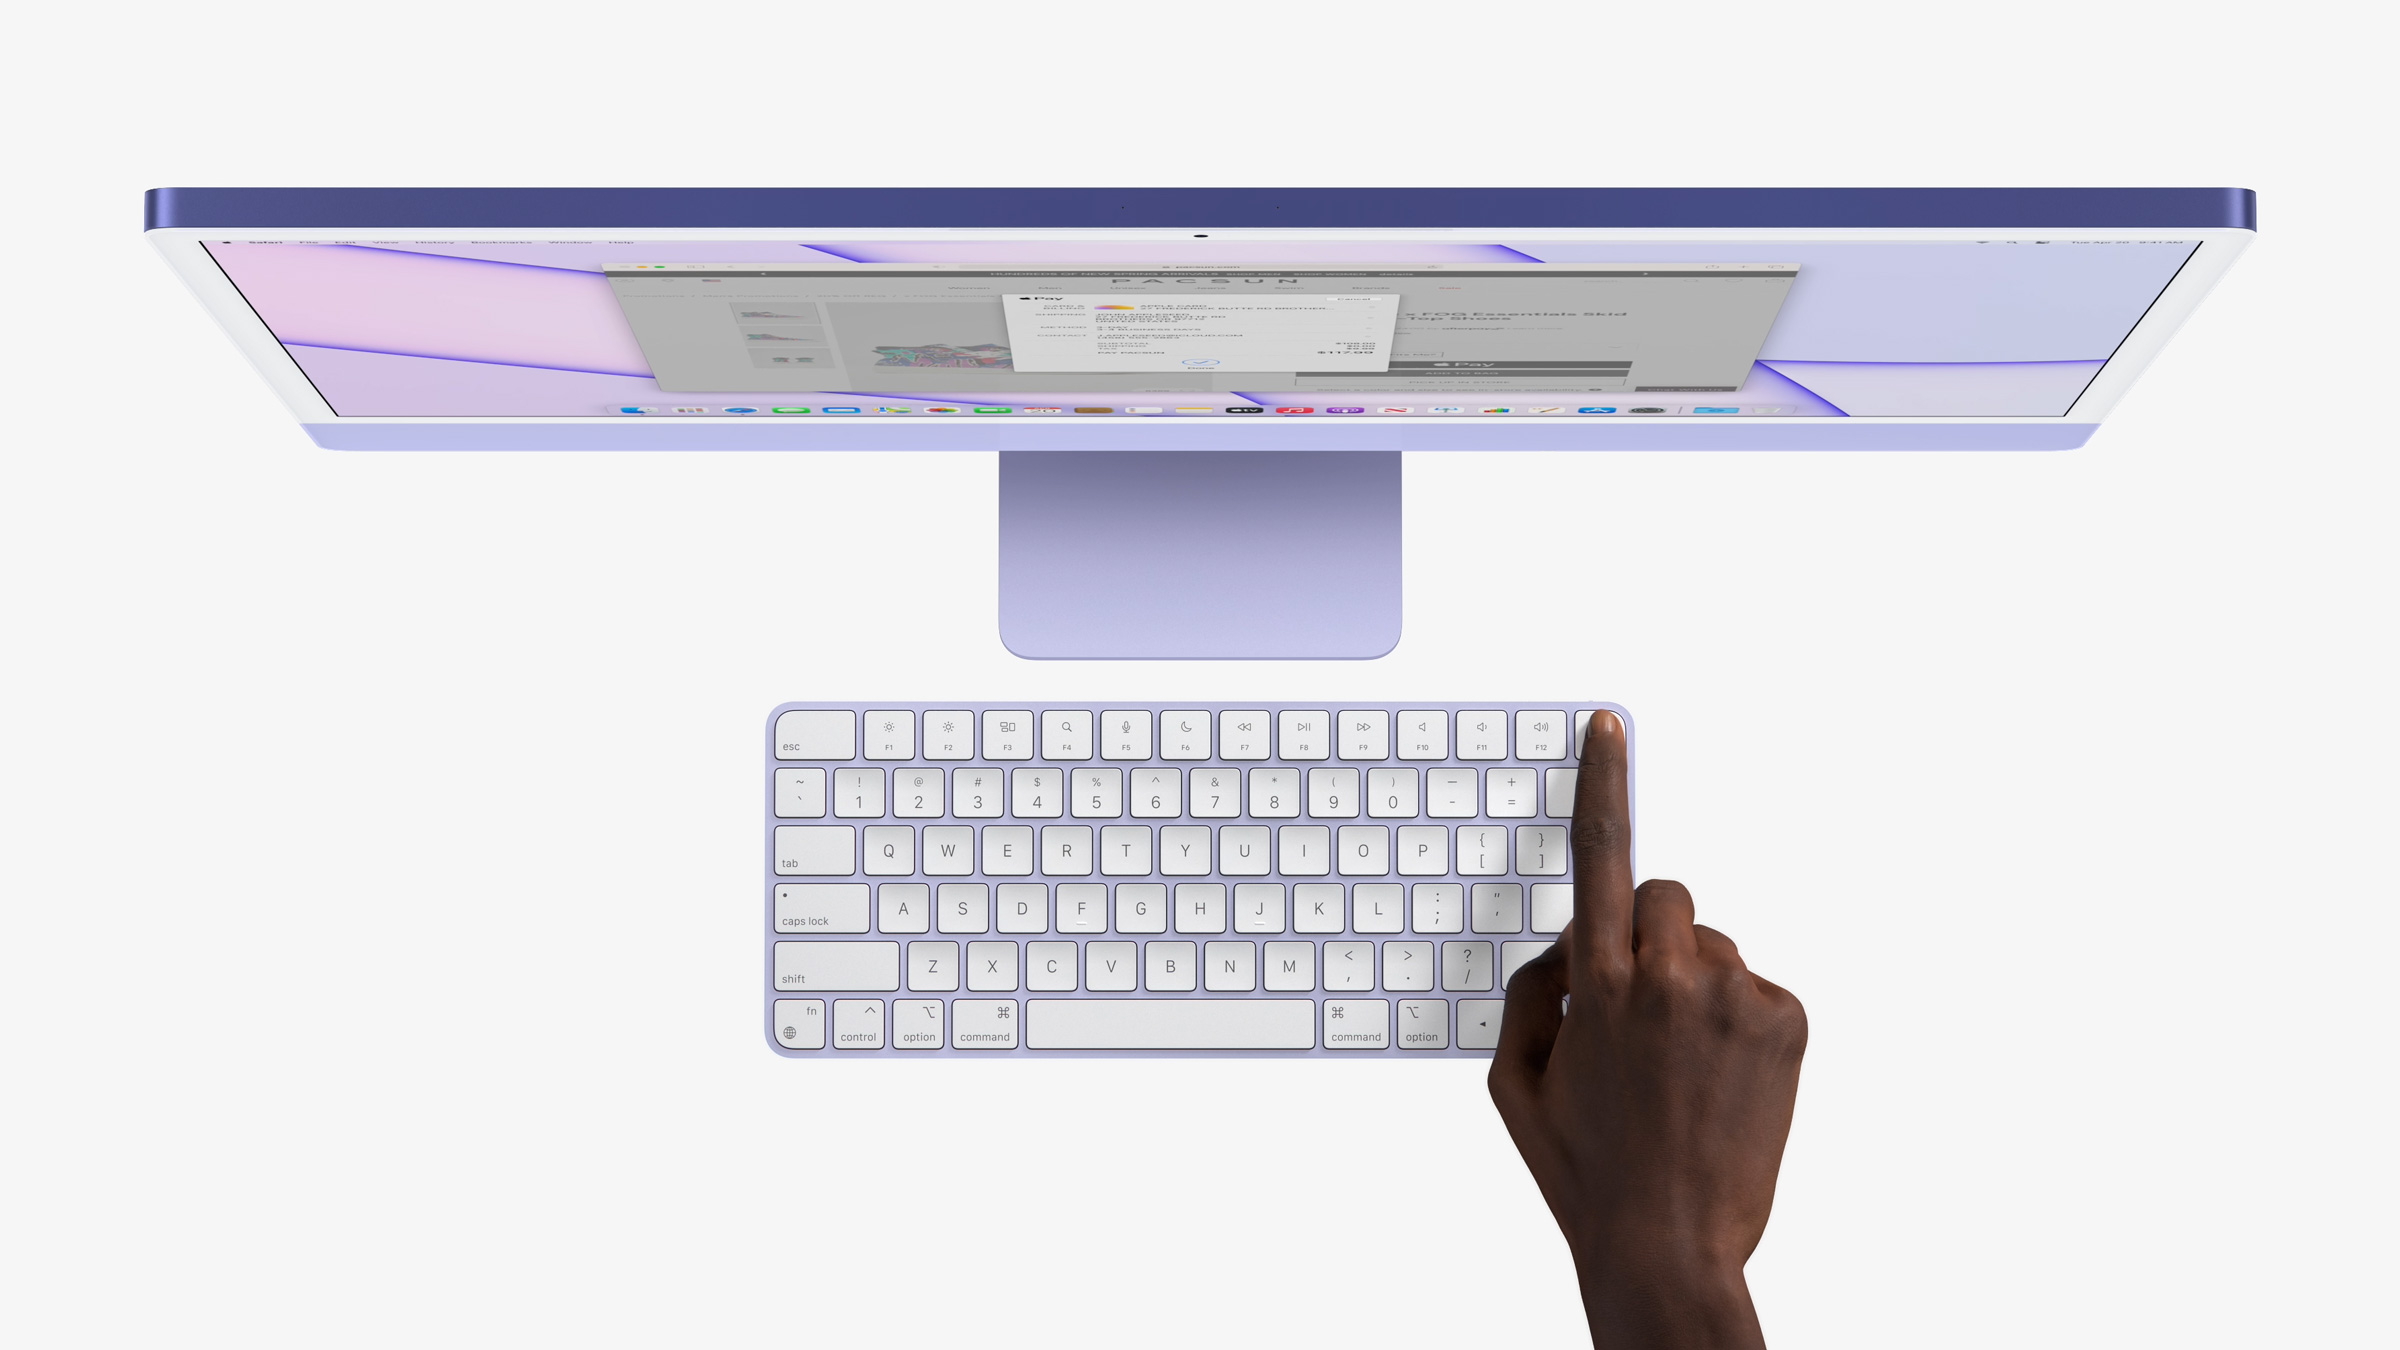 iMac 2021 chạy chip M1 ra mắt, 7 tuỳ chọn màu mới và thiết kế giống Pro Display XDR